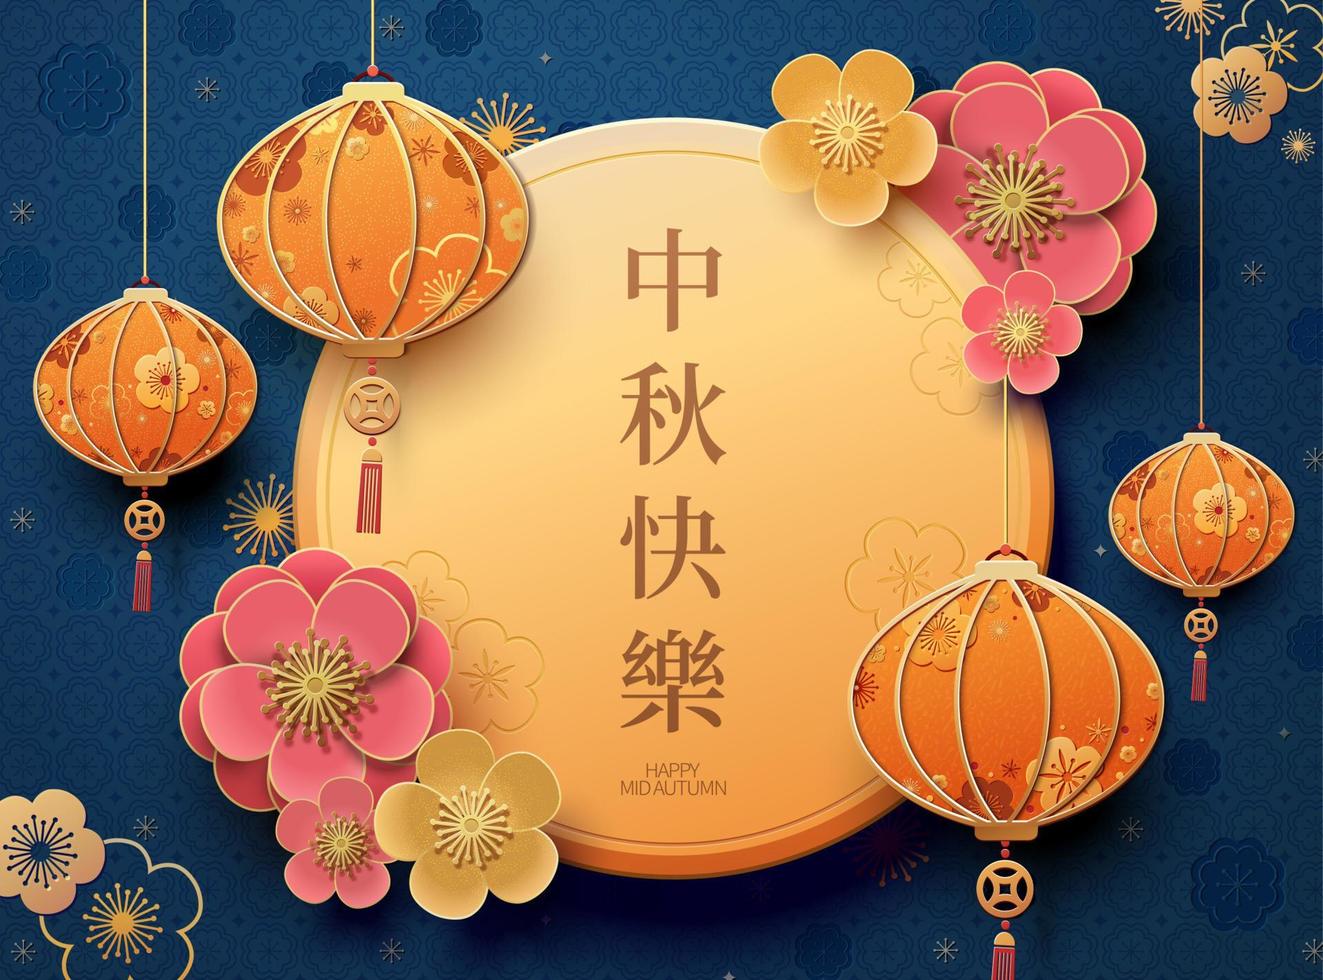 gelukkig midden herfst festival met hangende lantaarns en bloemen, vakantie naam geschreven in Chinese woorden vector